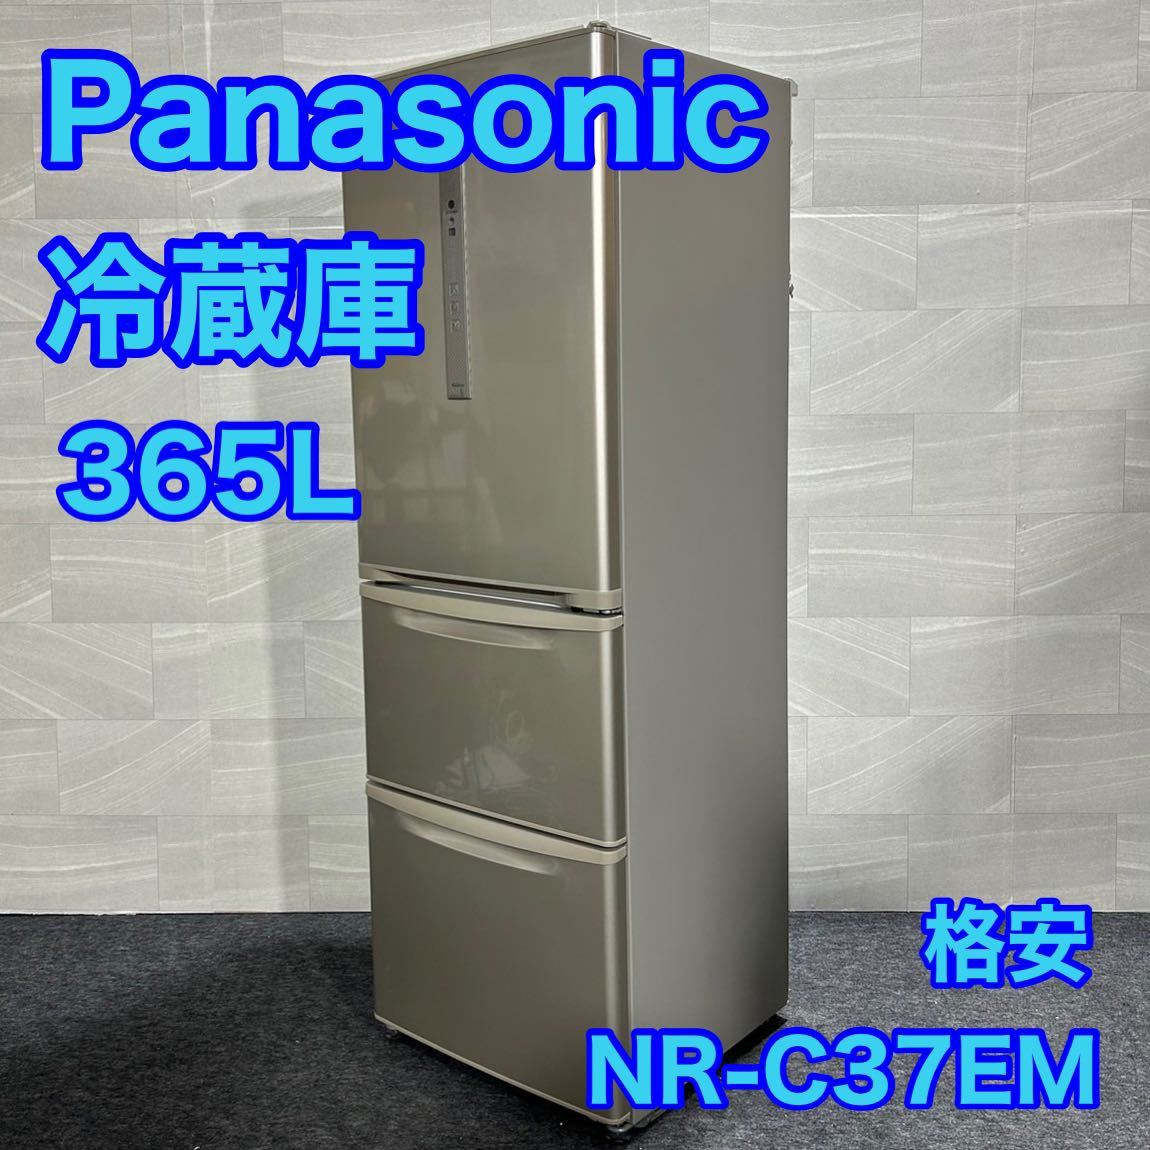 パナソニック 中型冷蔵庫 NR-C37EM-N 365L 3ドア 右開き d1634 格安 お買い得 右開き Panasonic 大型冷蔵庫